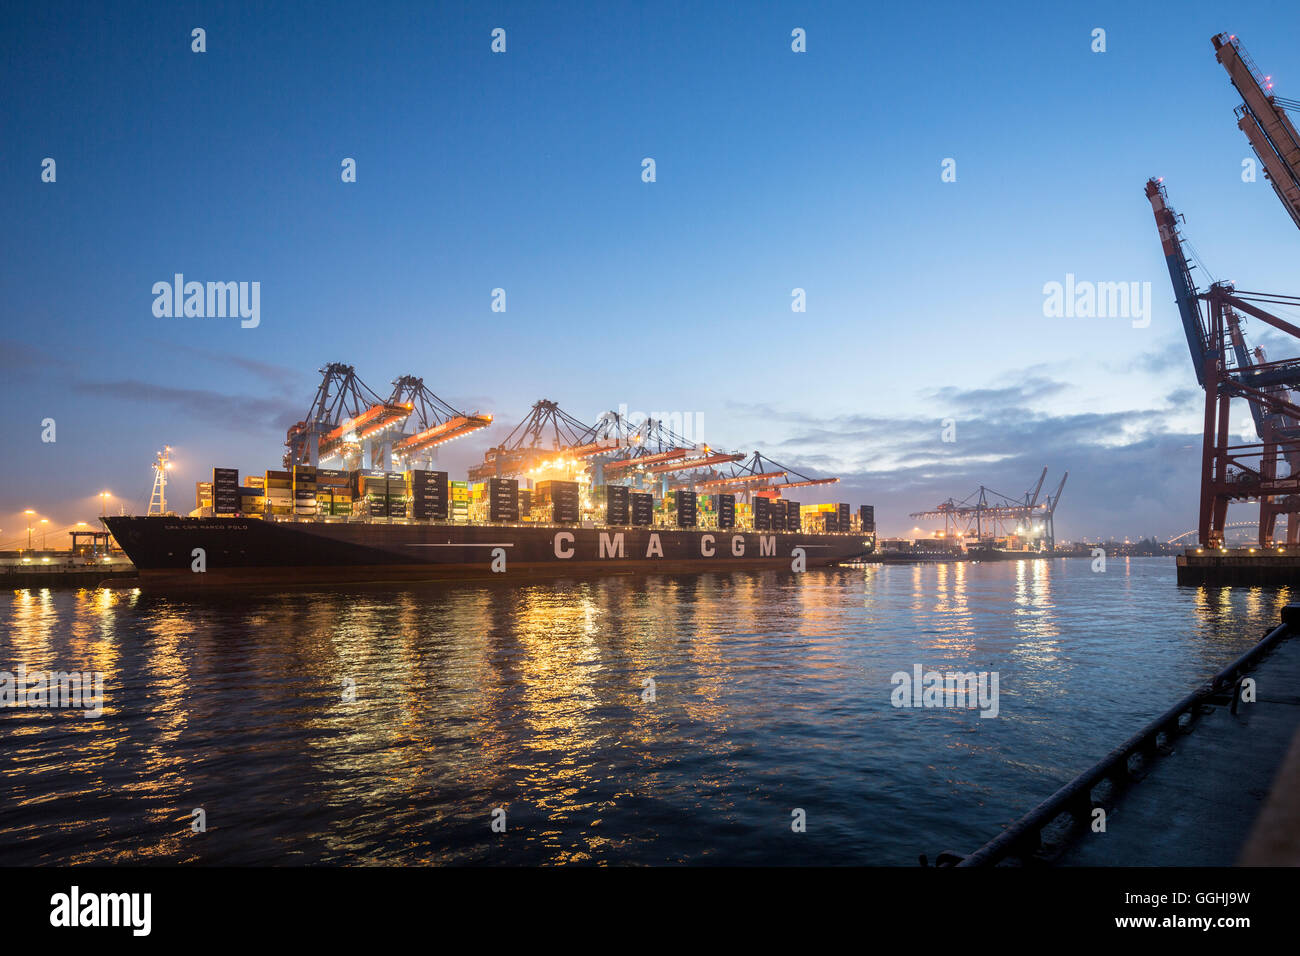 Le chargement et le déchargement du navire porte-conteneurs CMA CGM Marco Polo dans le Container Terminal Burchardkai à Hambourg, Allemagne Banque D'Images